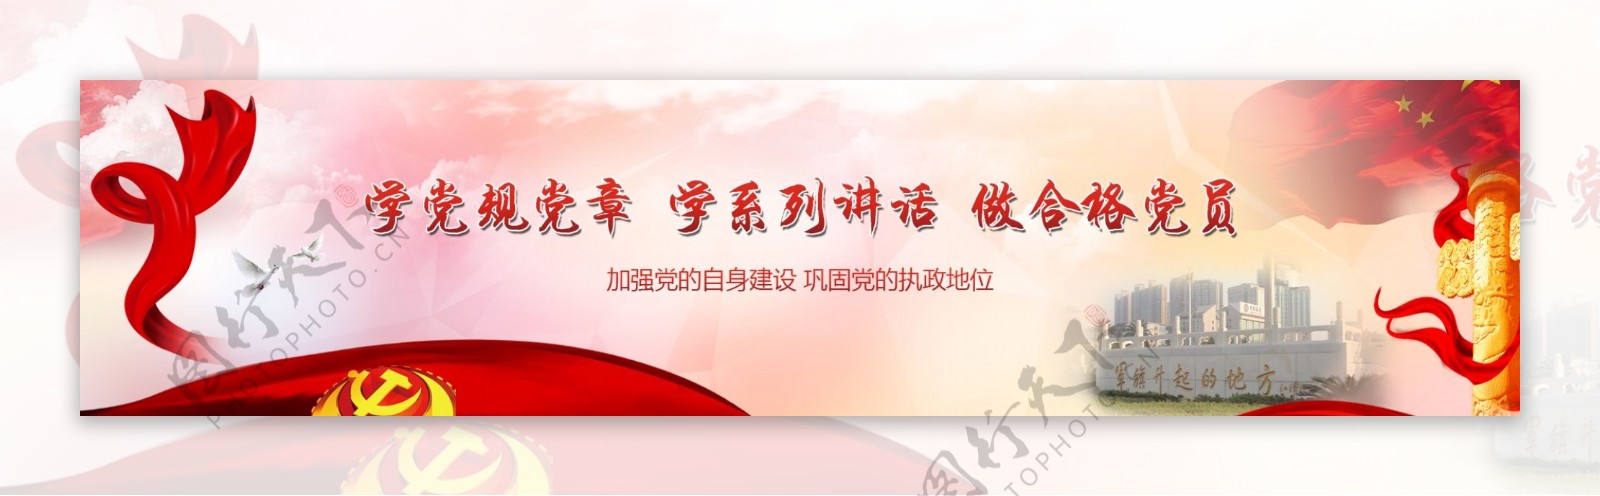 党建红色主题网页banner